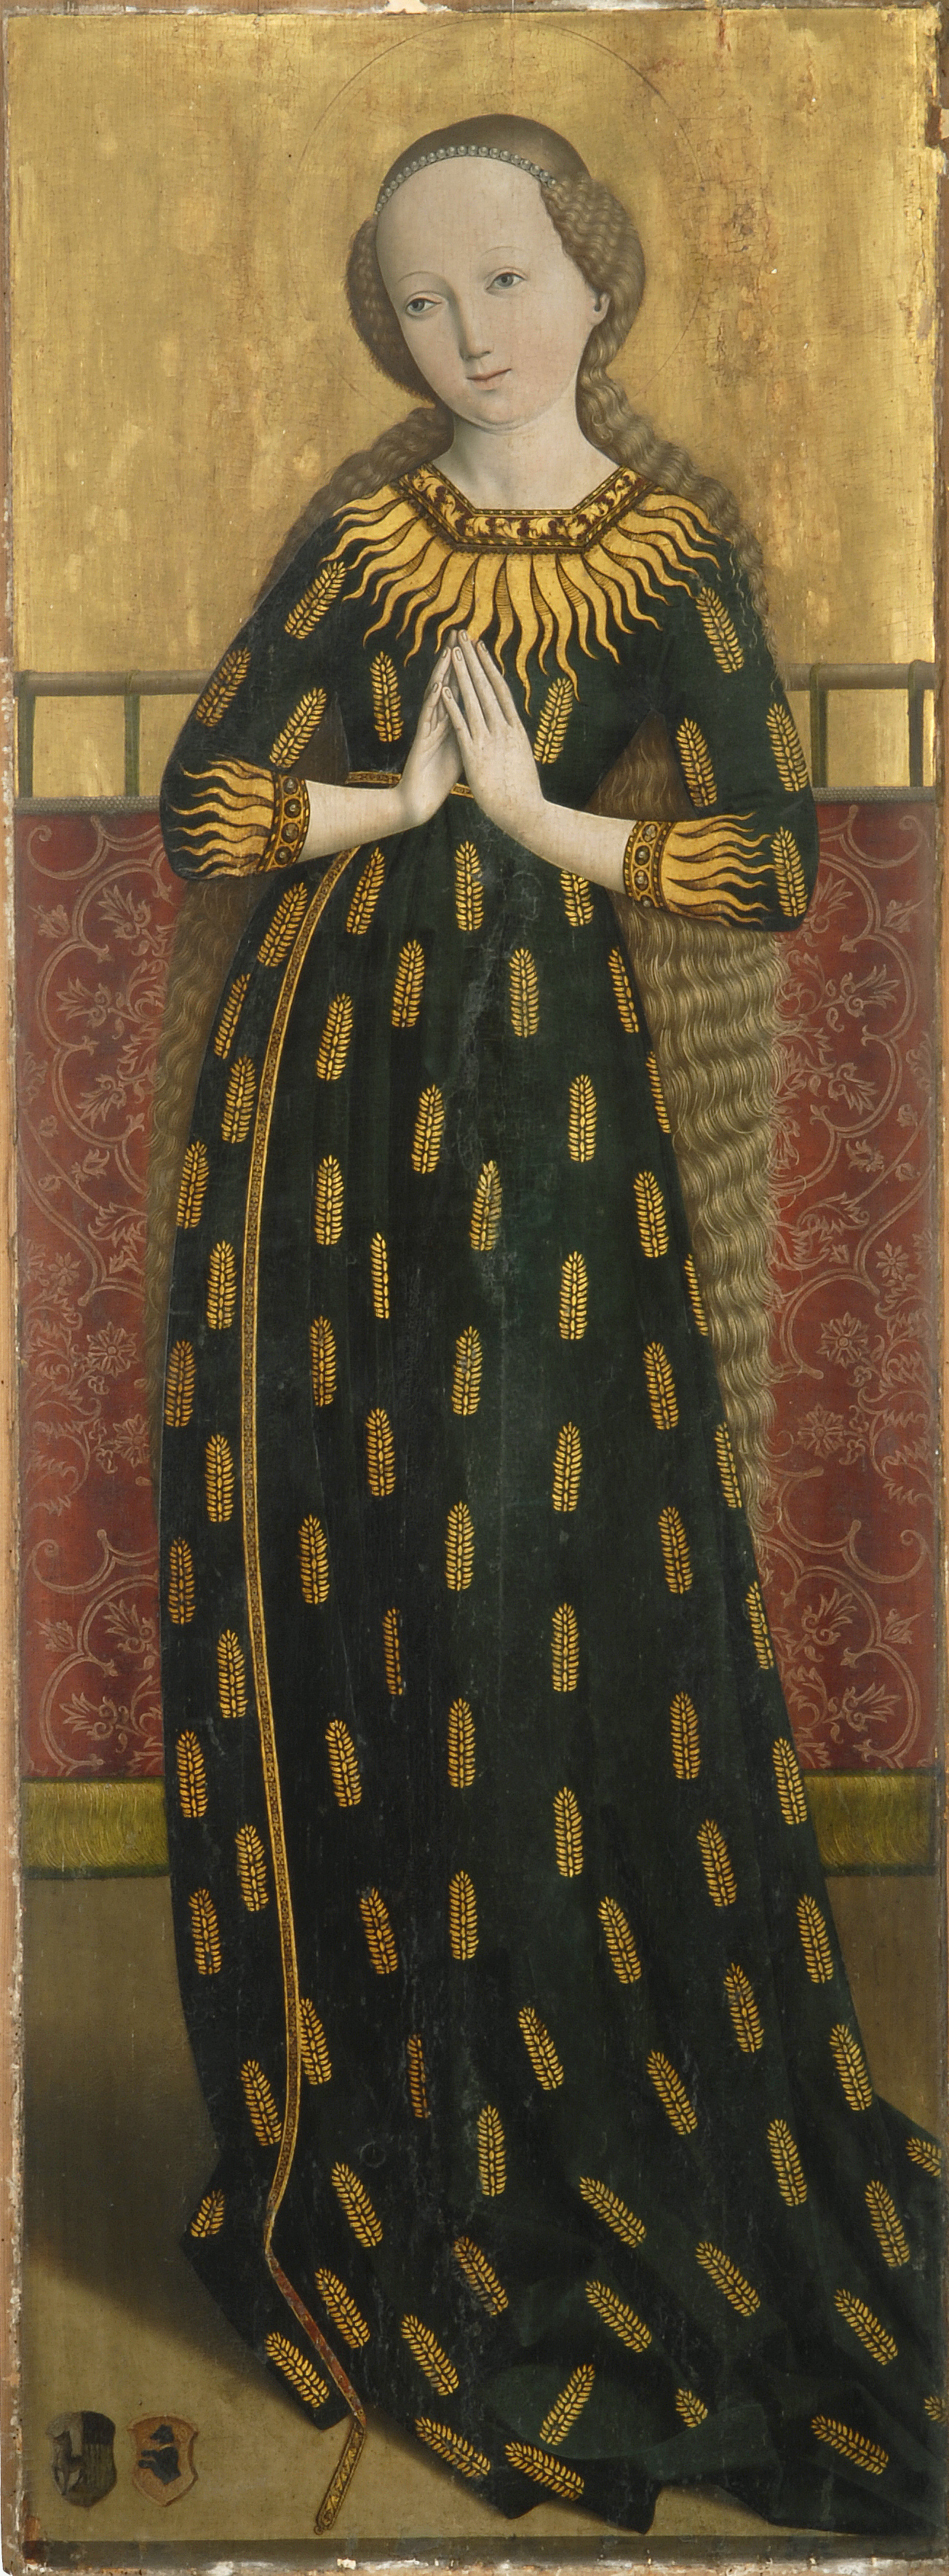 Maria im Ährenkleid Salzburg um 1490 BNM